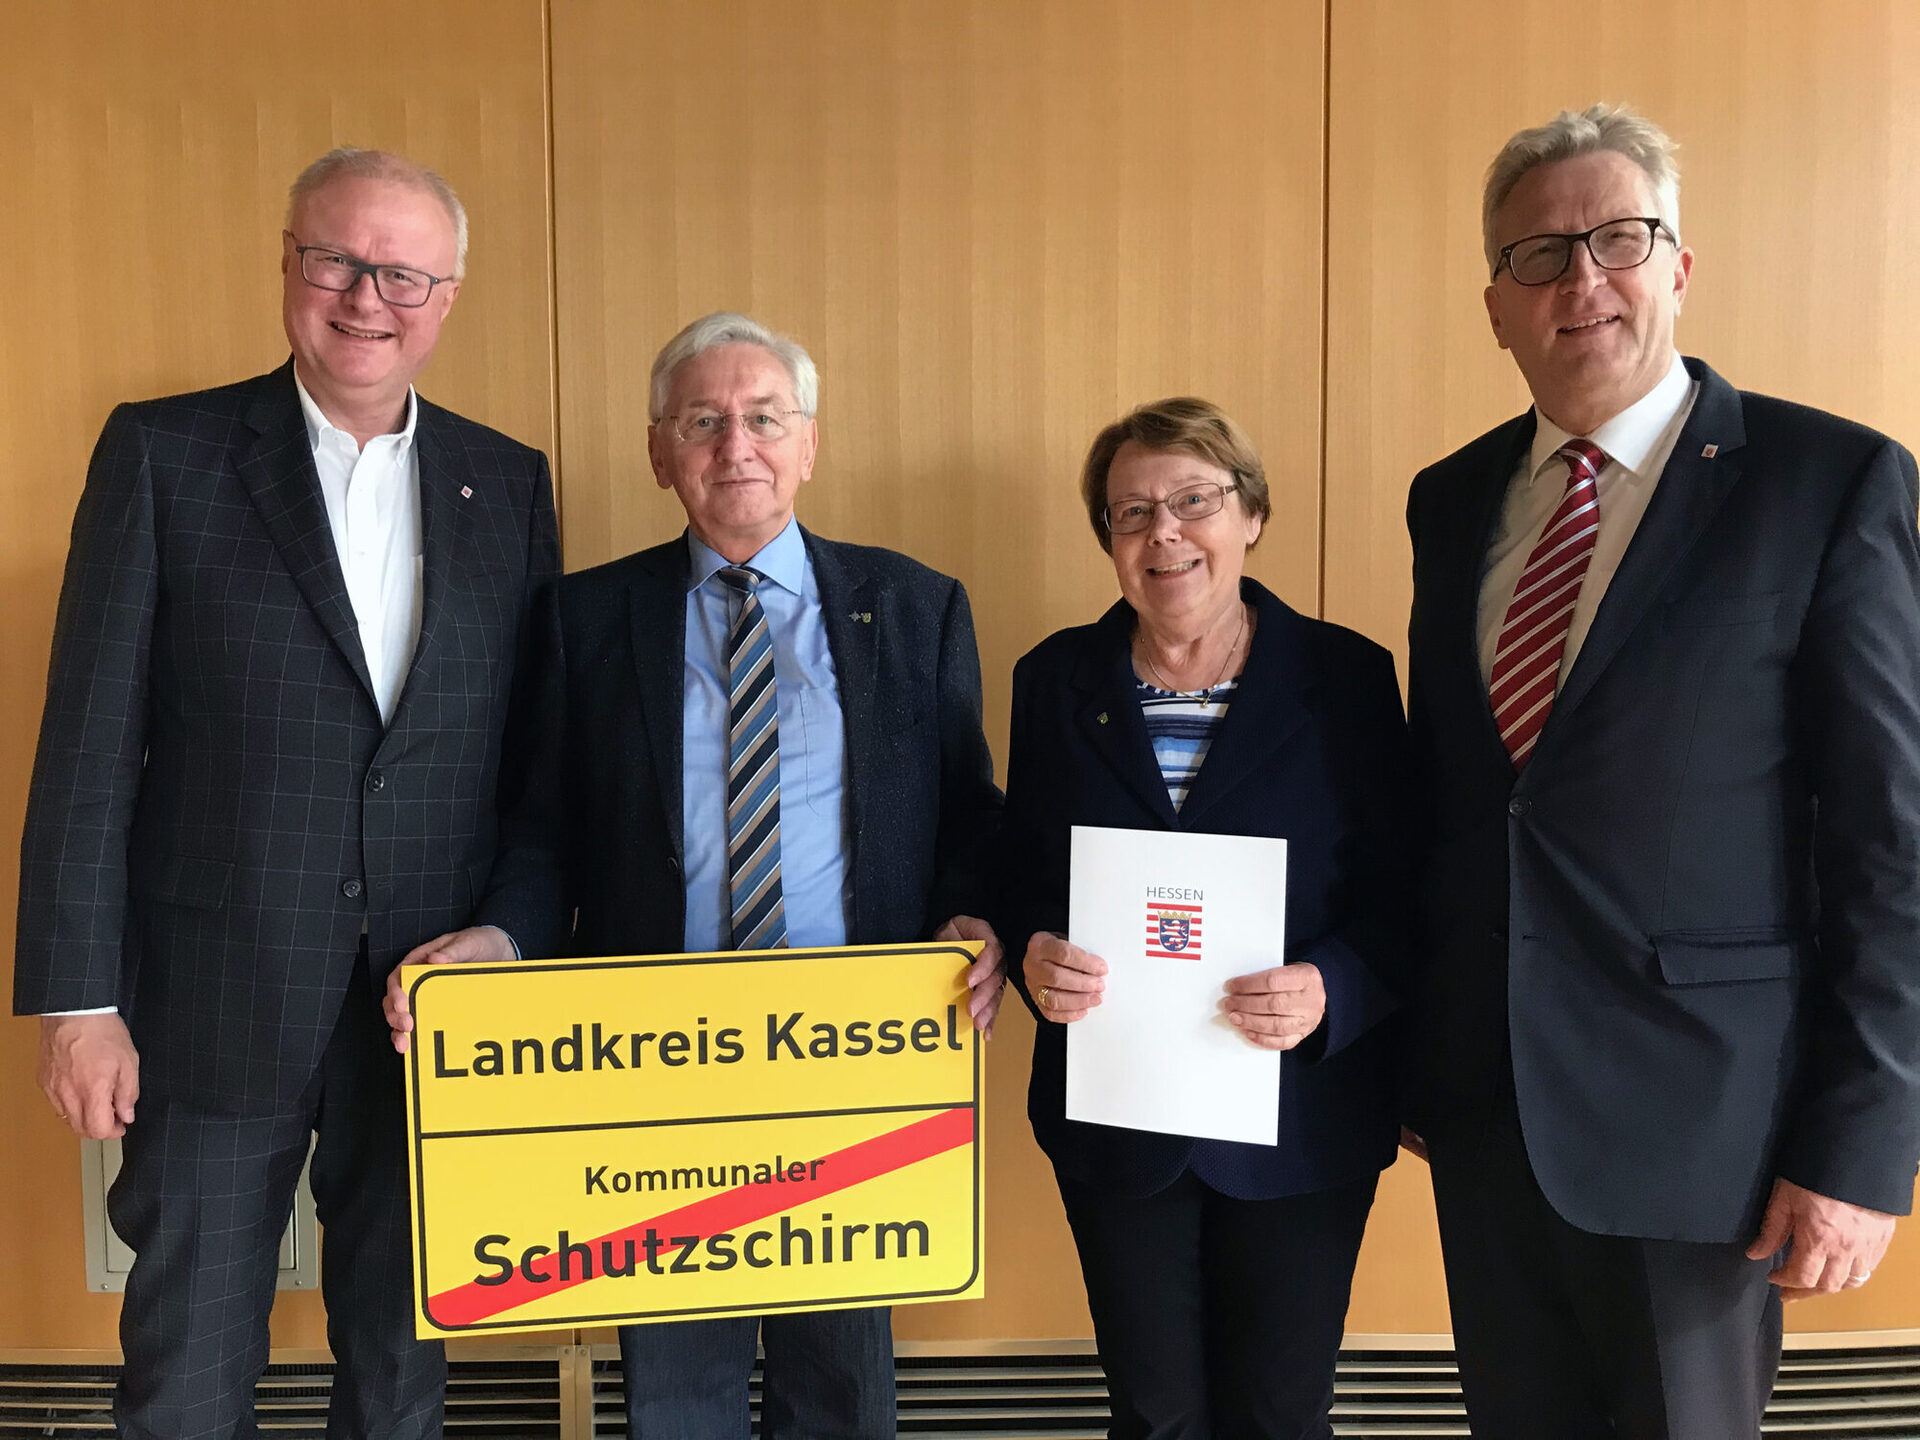 Auf dem Foto sieht man von links nach rechts den Hessischen Finanzminister Dr. Thomas Schäfer, Kreisbeigeordneten Wilfried Wehnes, Kreisbeigeordnete Irmgard Croll und Regierungspräsident Hermann-Josef Klüber.